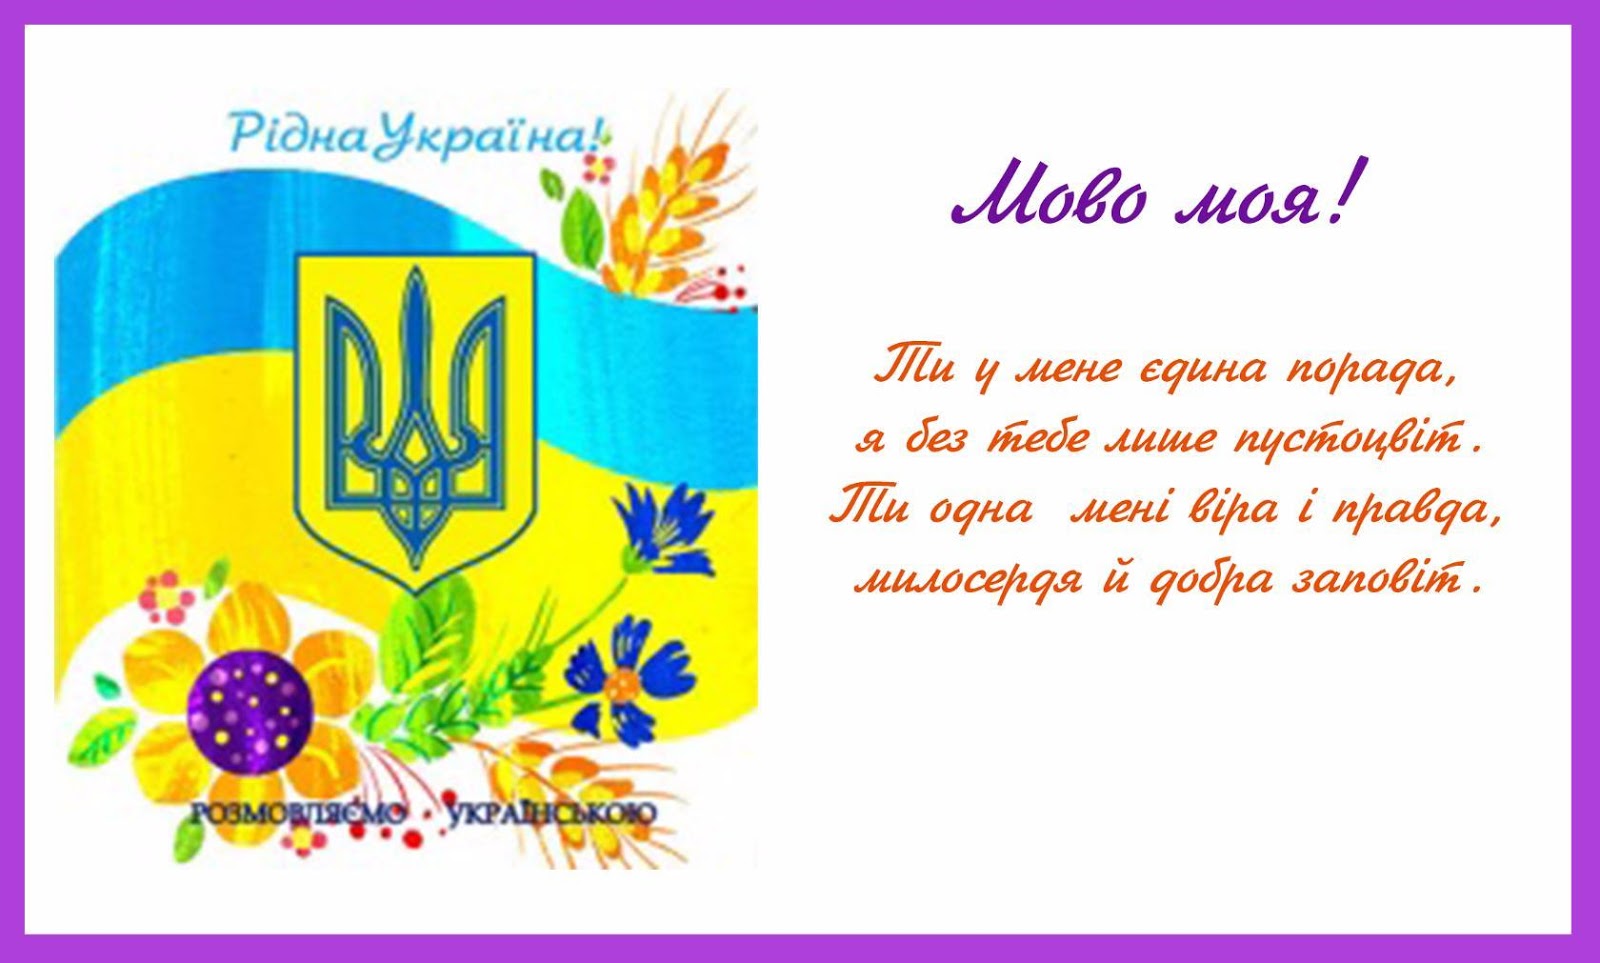 Рідна мова. День рідної мови. Плакат на день украинской мови. До дня мови.